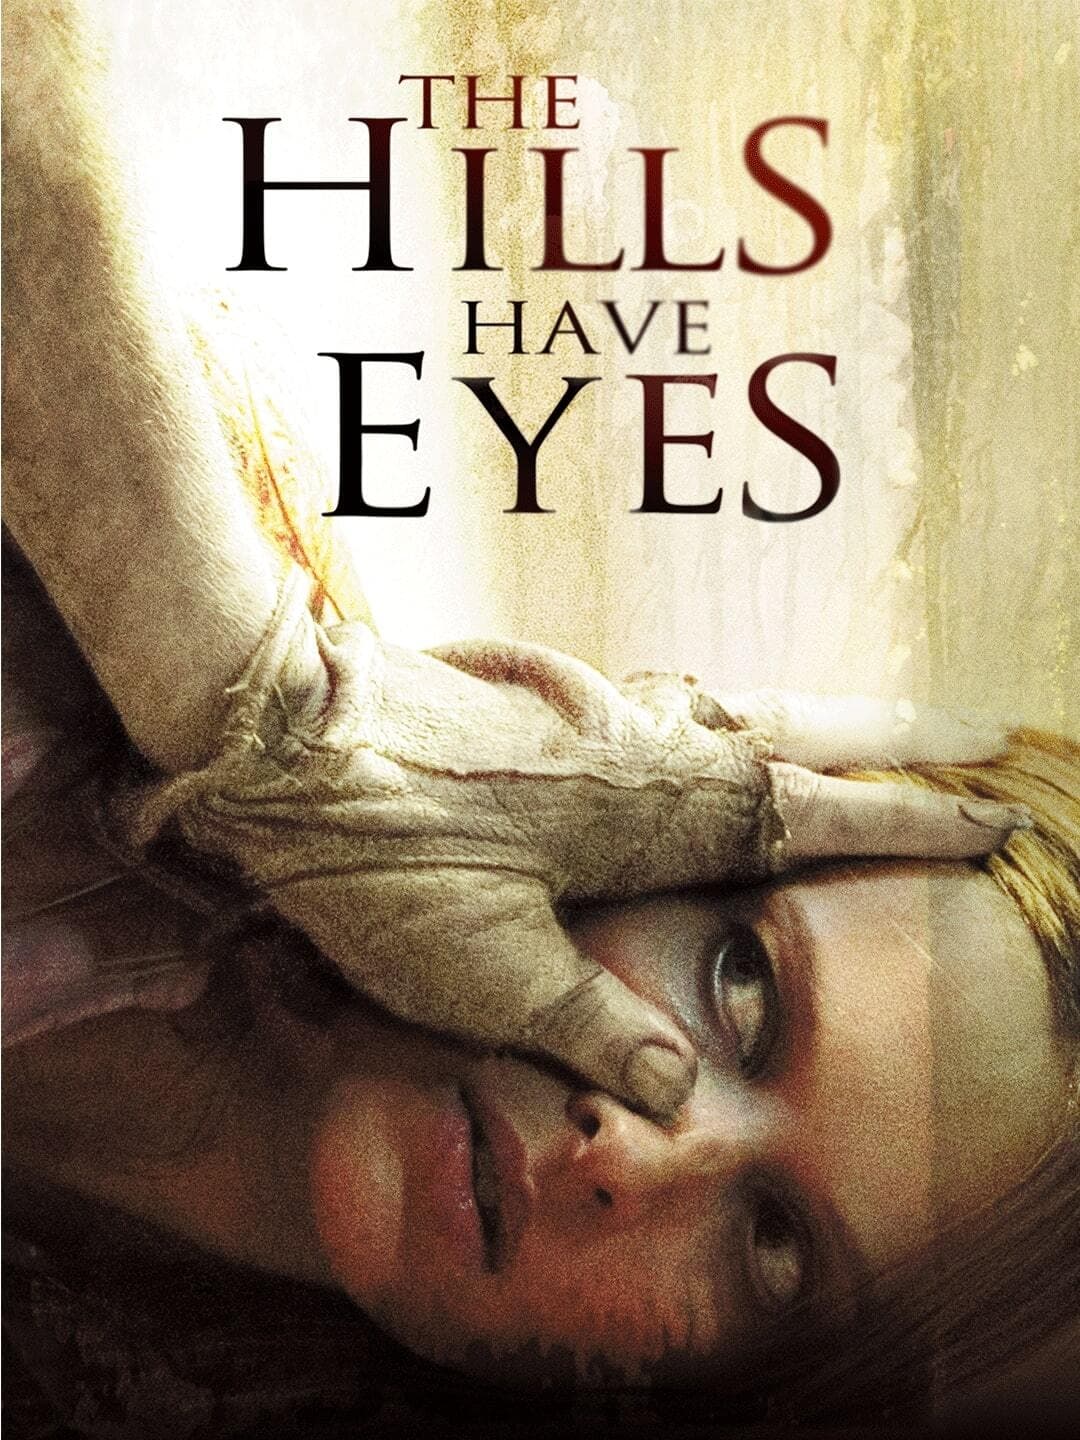 Ngọn Đồi Có Mắt - The Hills Have Eyes (2006)